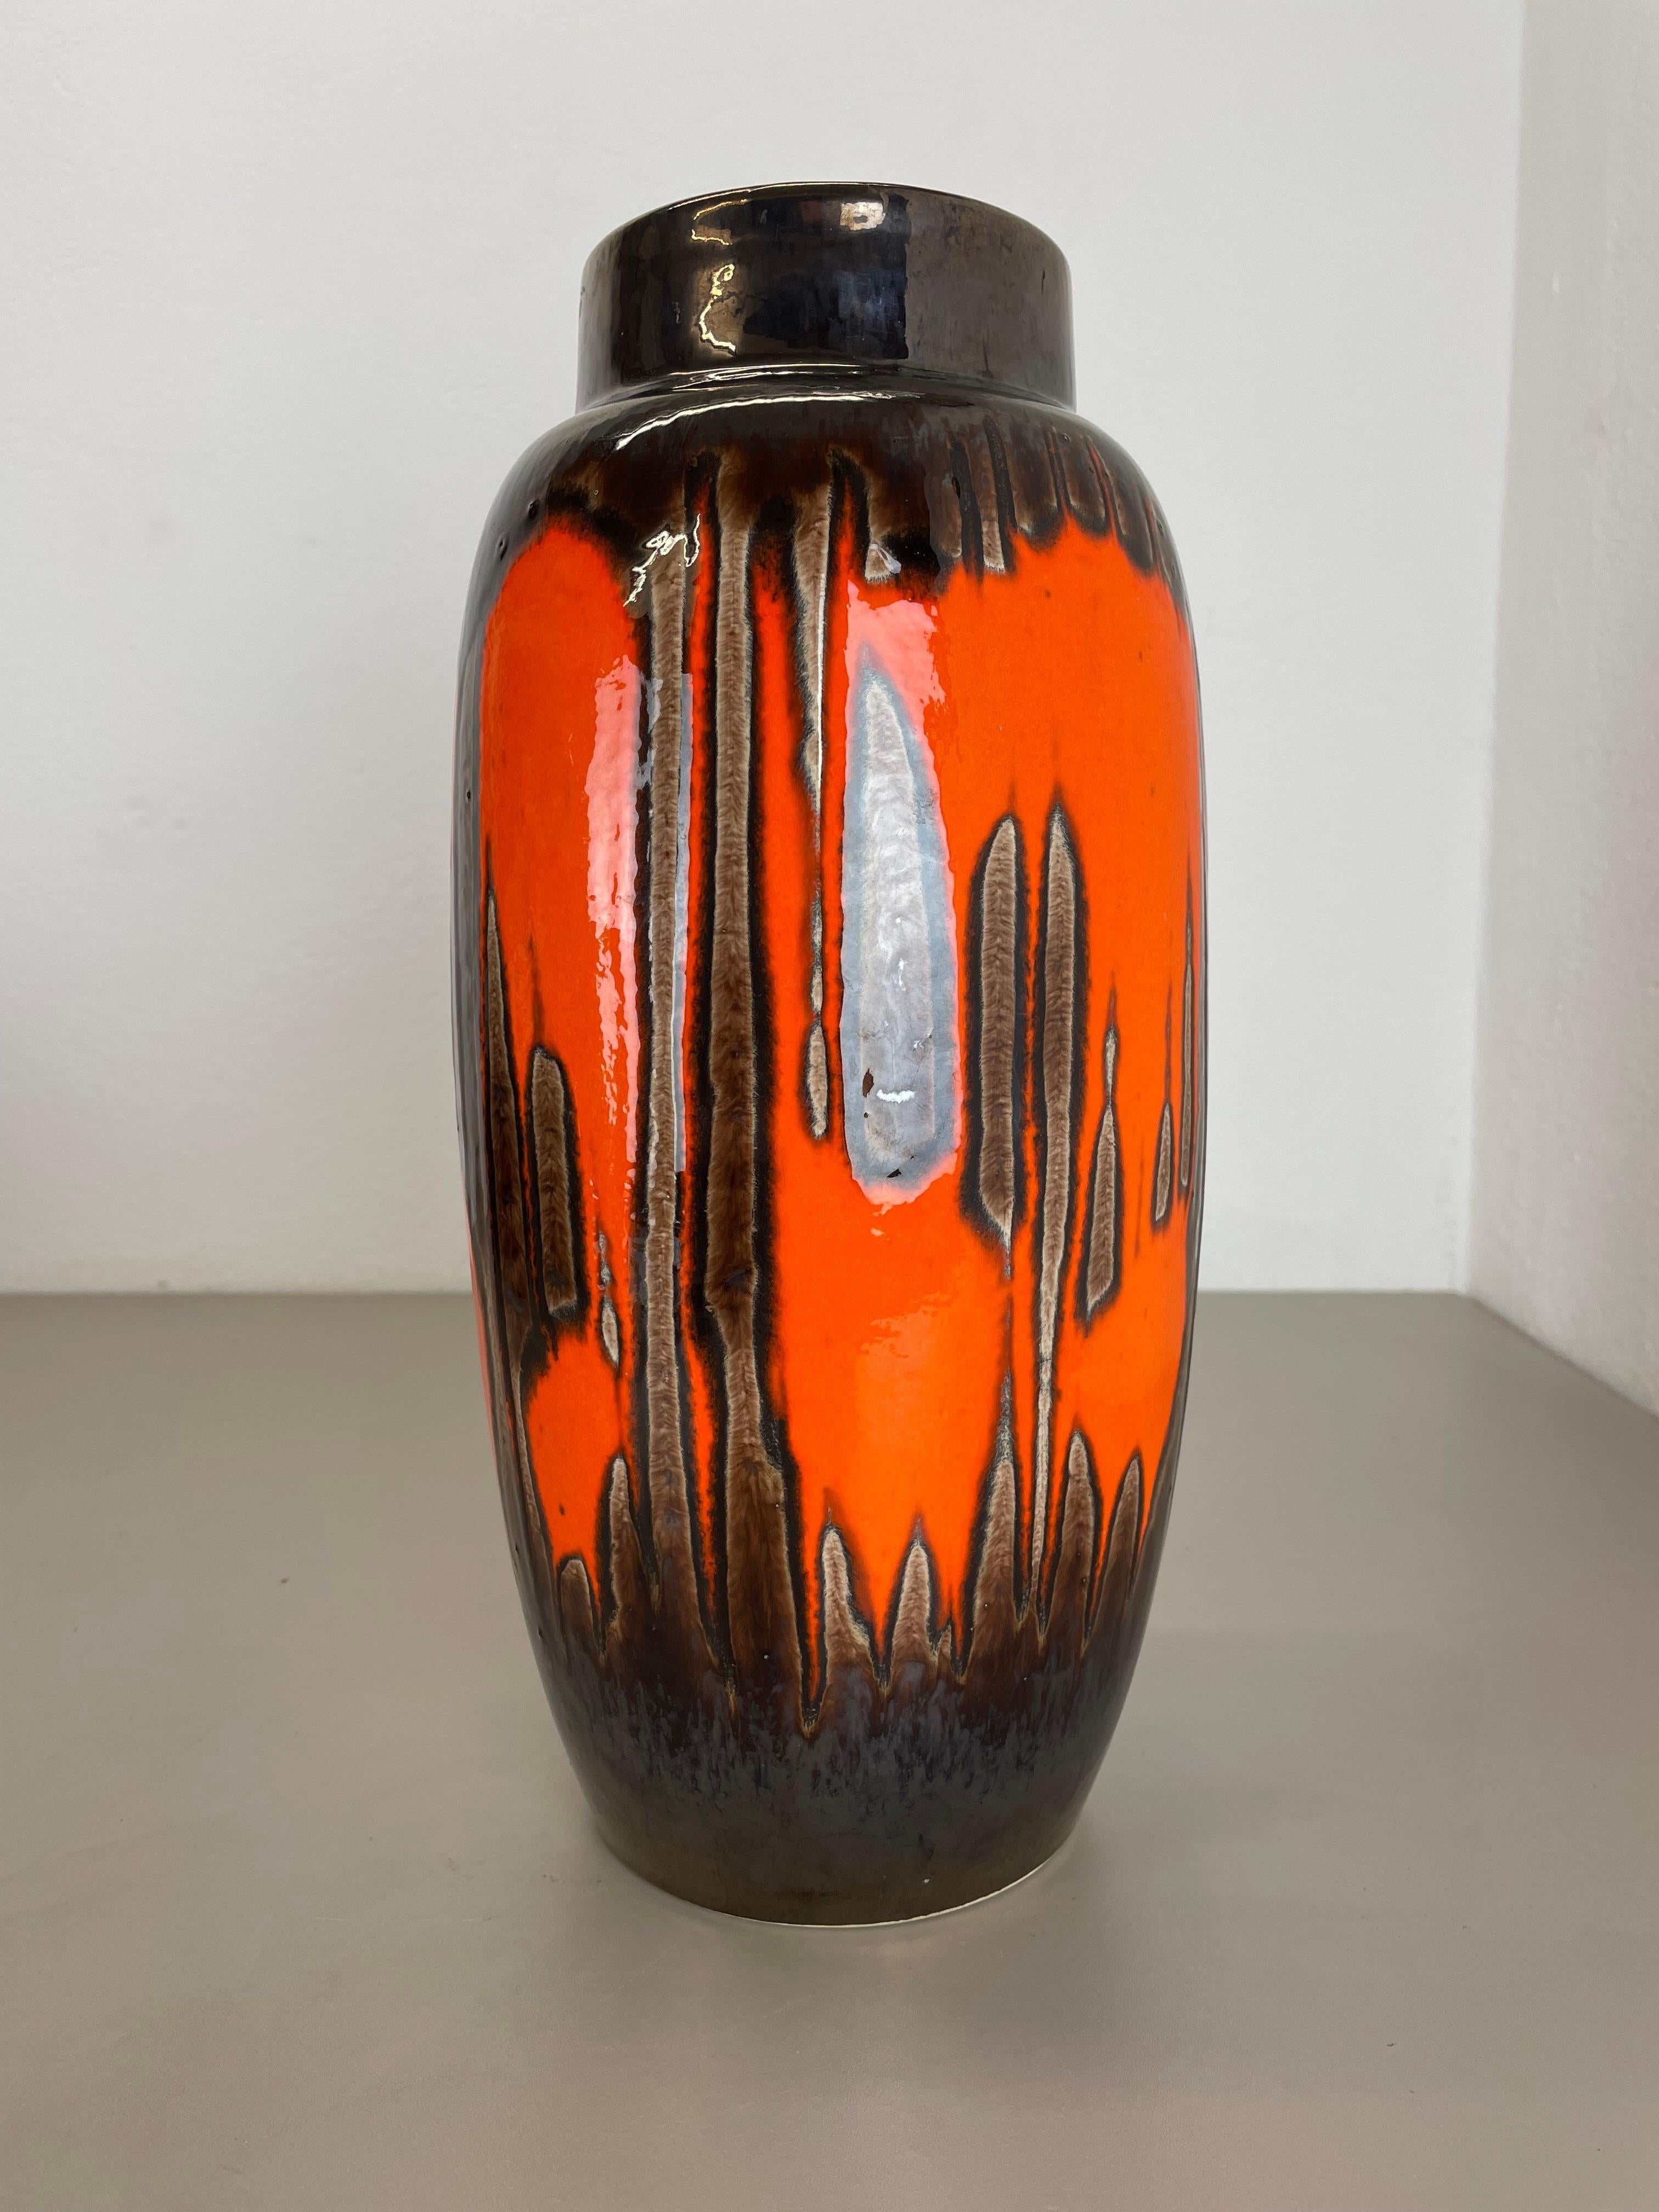 Article :

Vase d'art en lave grasse super rare ZIG ZAG DECOR.



Producteur :

Scheurich, Allemagne



Décennie :

1970s




Ce vase vintage original a été produit dans les années 1970 en Allemagne par Scheurich. Il est réalisé en poterie céramique